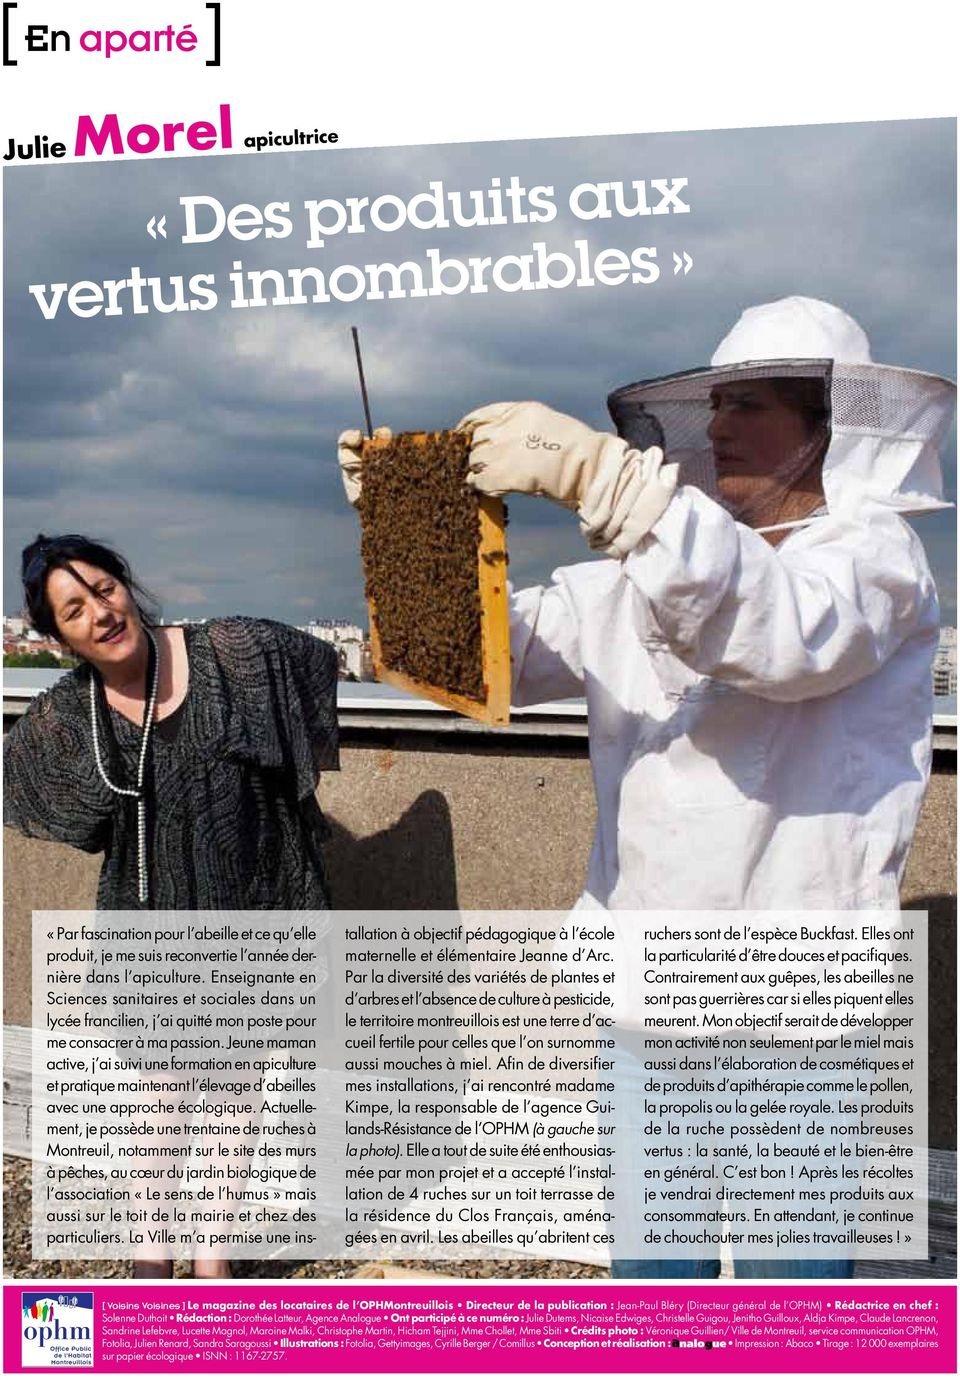 Jeune maman active, j ai suivi une formation en apiculture et pratique maintenant l élevage d abeilles avec une approche écologique.